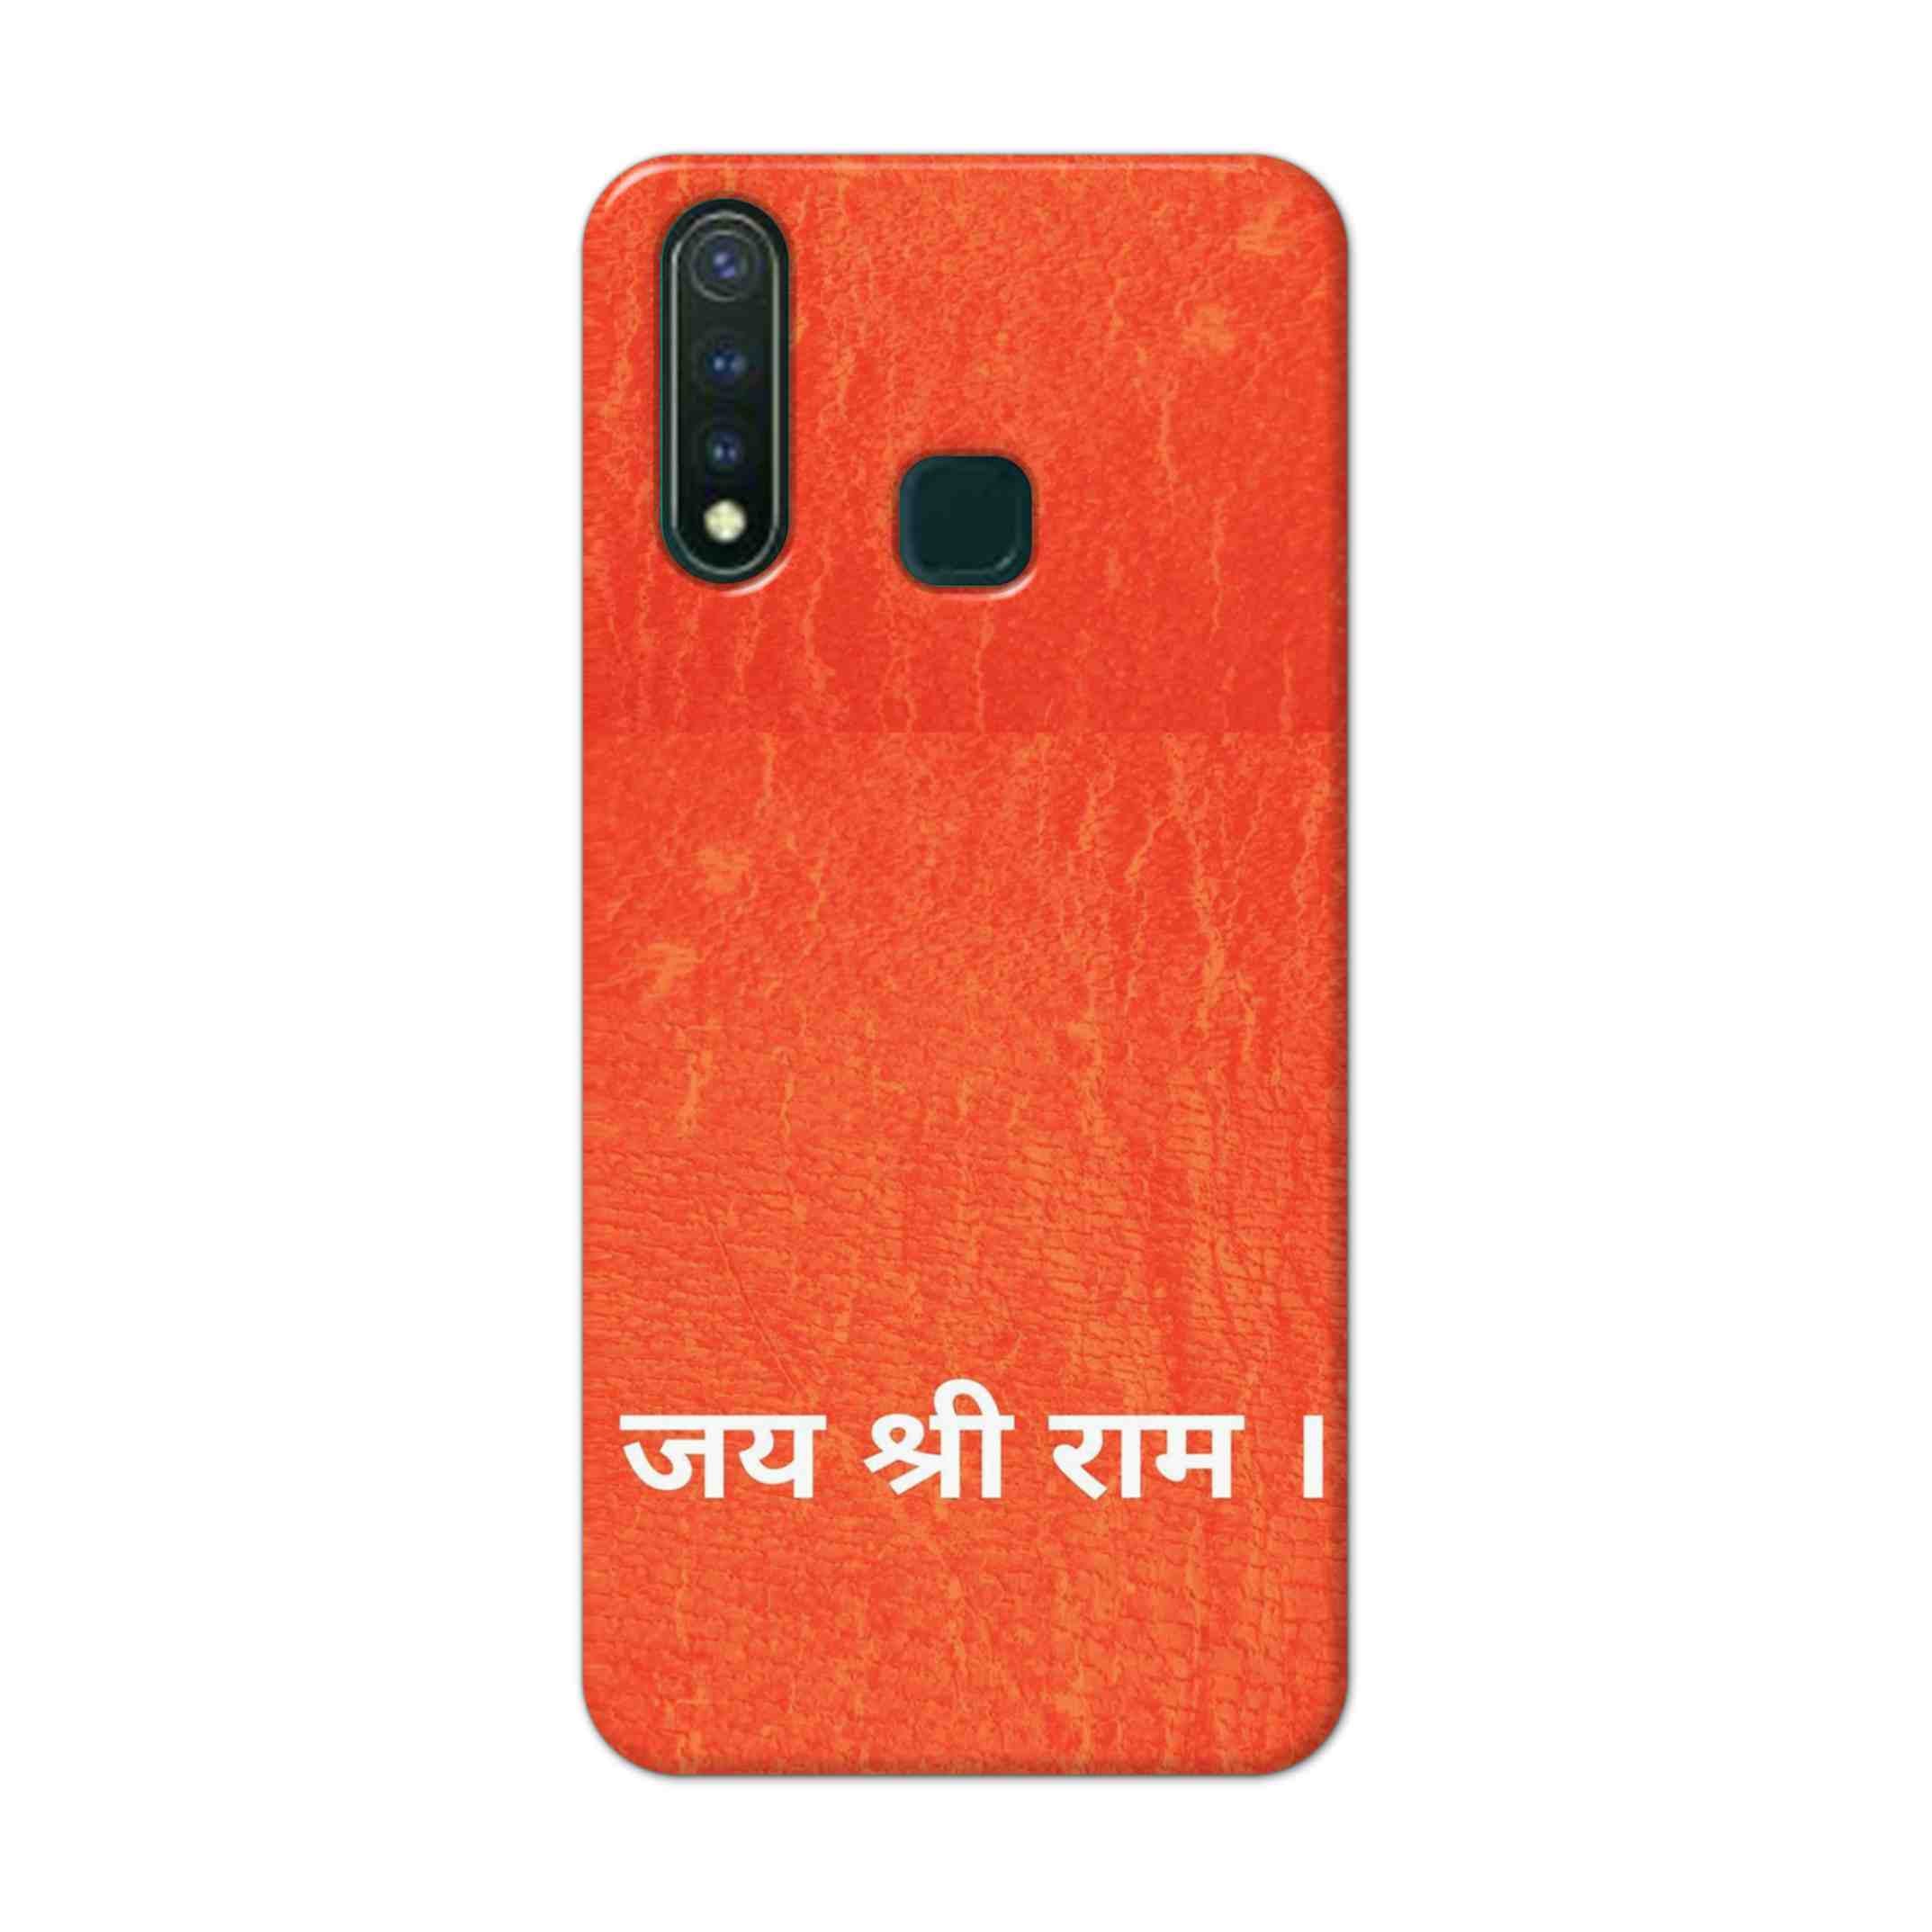 Buy Jai Shree Ram Hard Back Mobile Phone Case Cover For Vivo Y19 Online